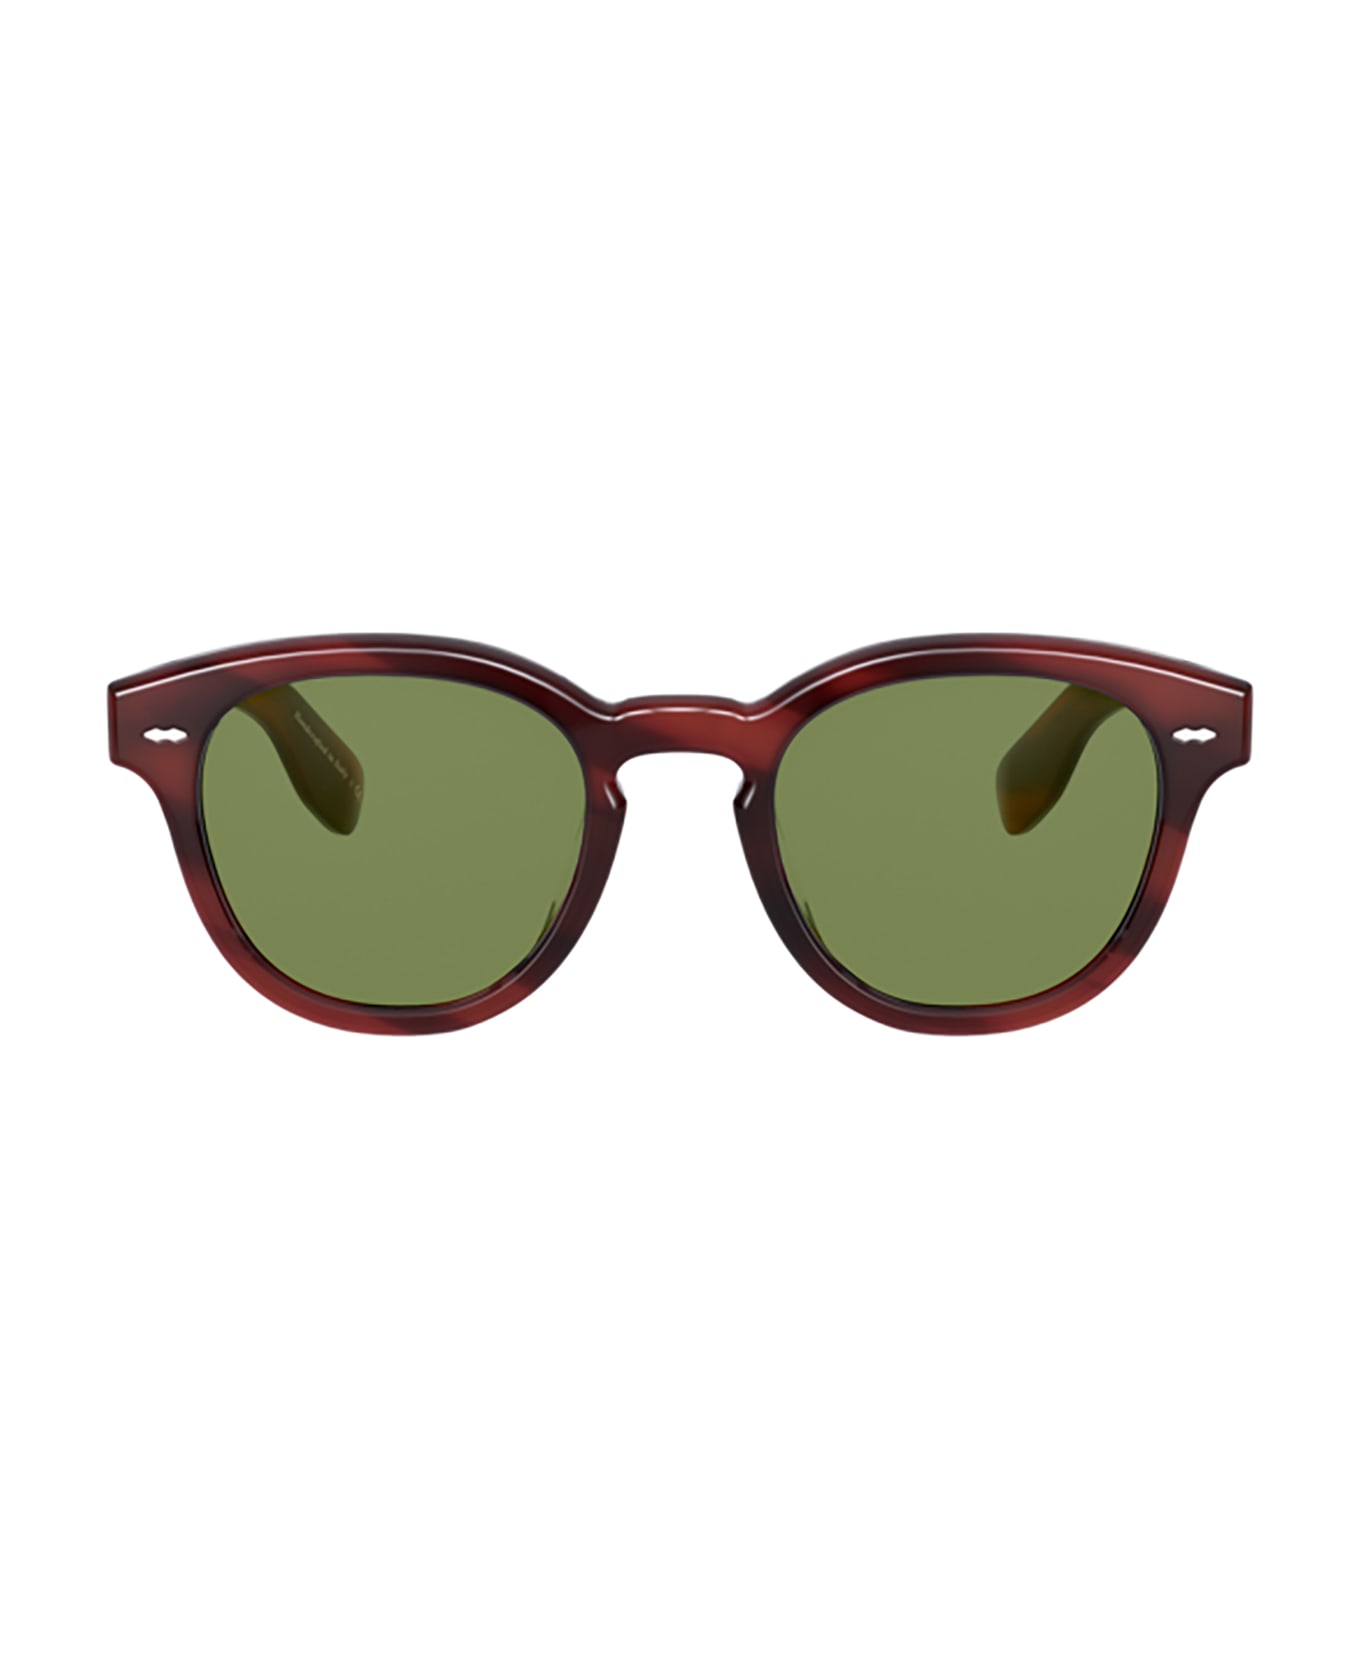 Oliver Peoples Ov5413su Grant Tortoise Sunglasses - Grant Tortoise